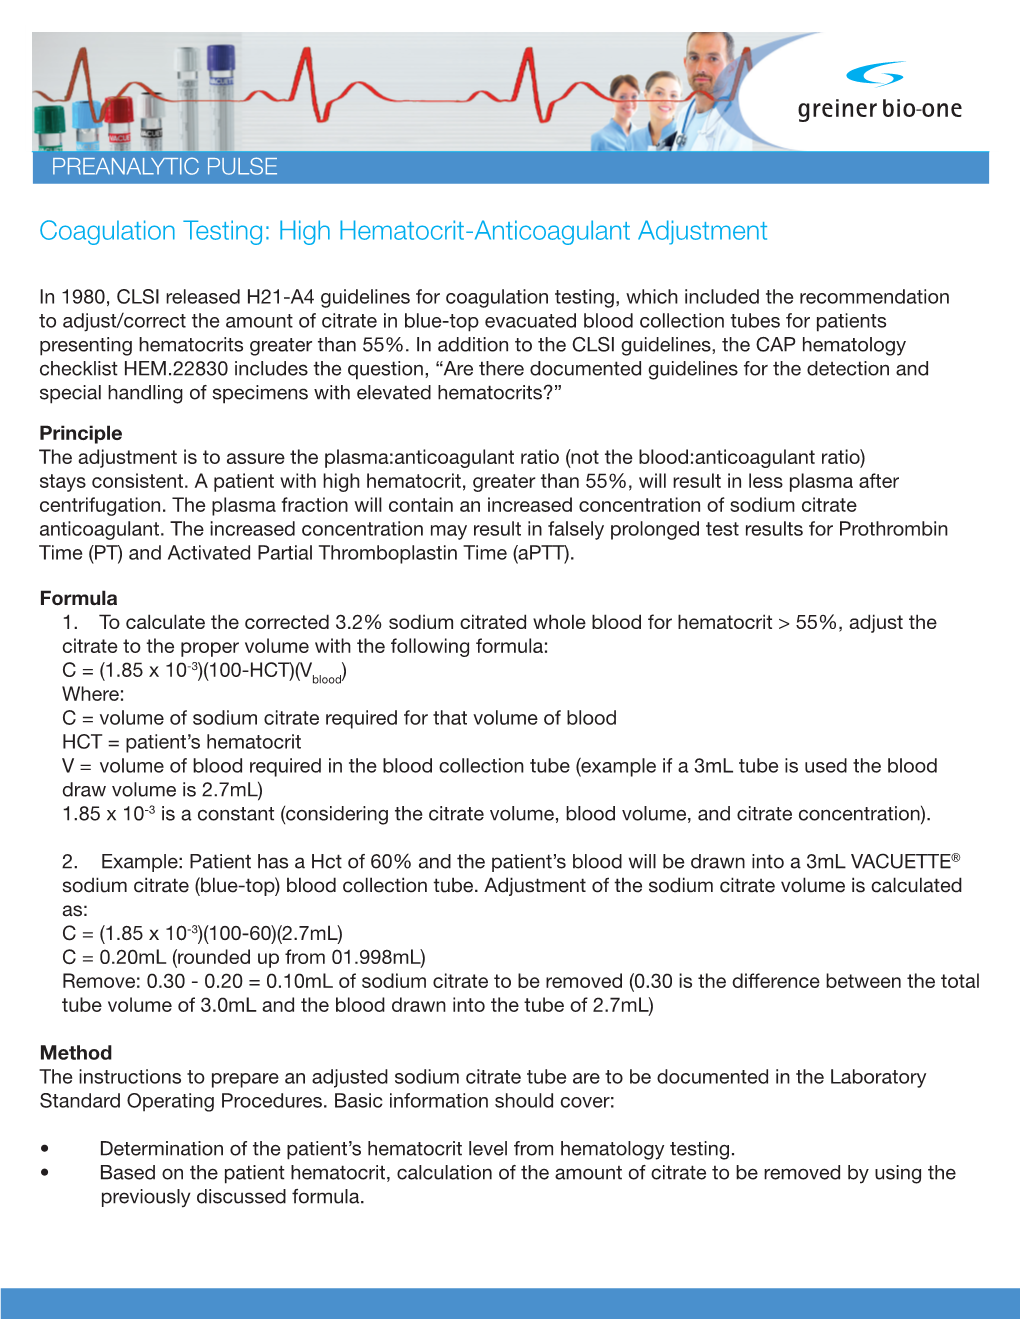 Coagulation Testing: High Hematocrit-Anticoagulant Adjustment